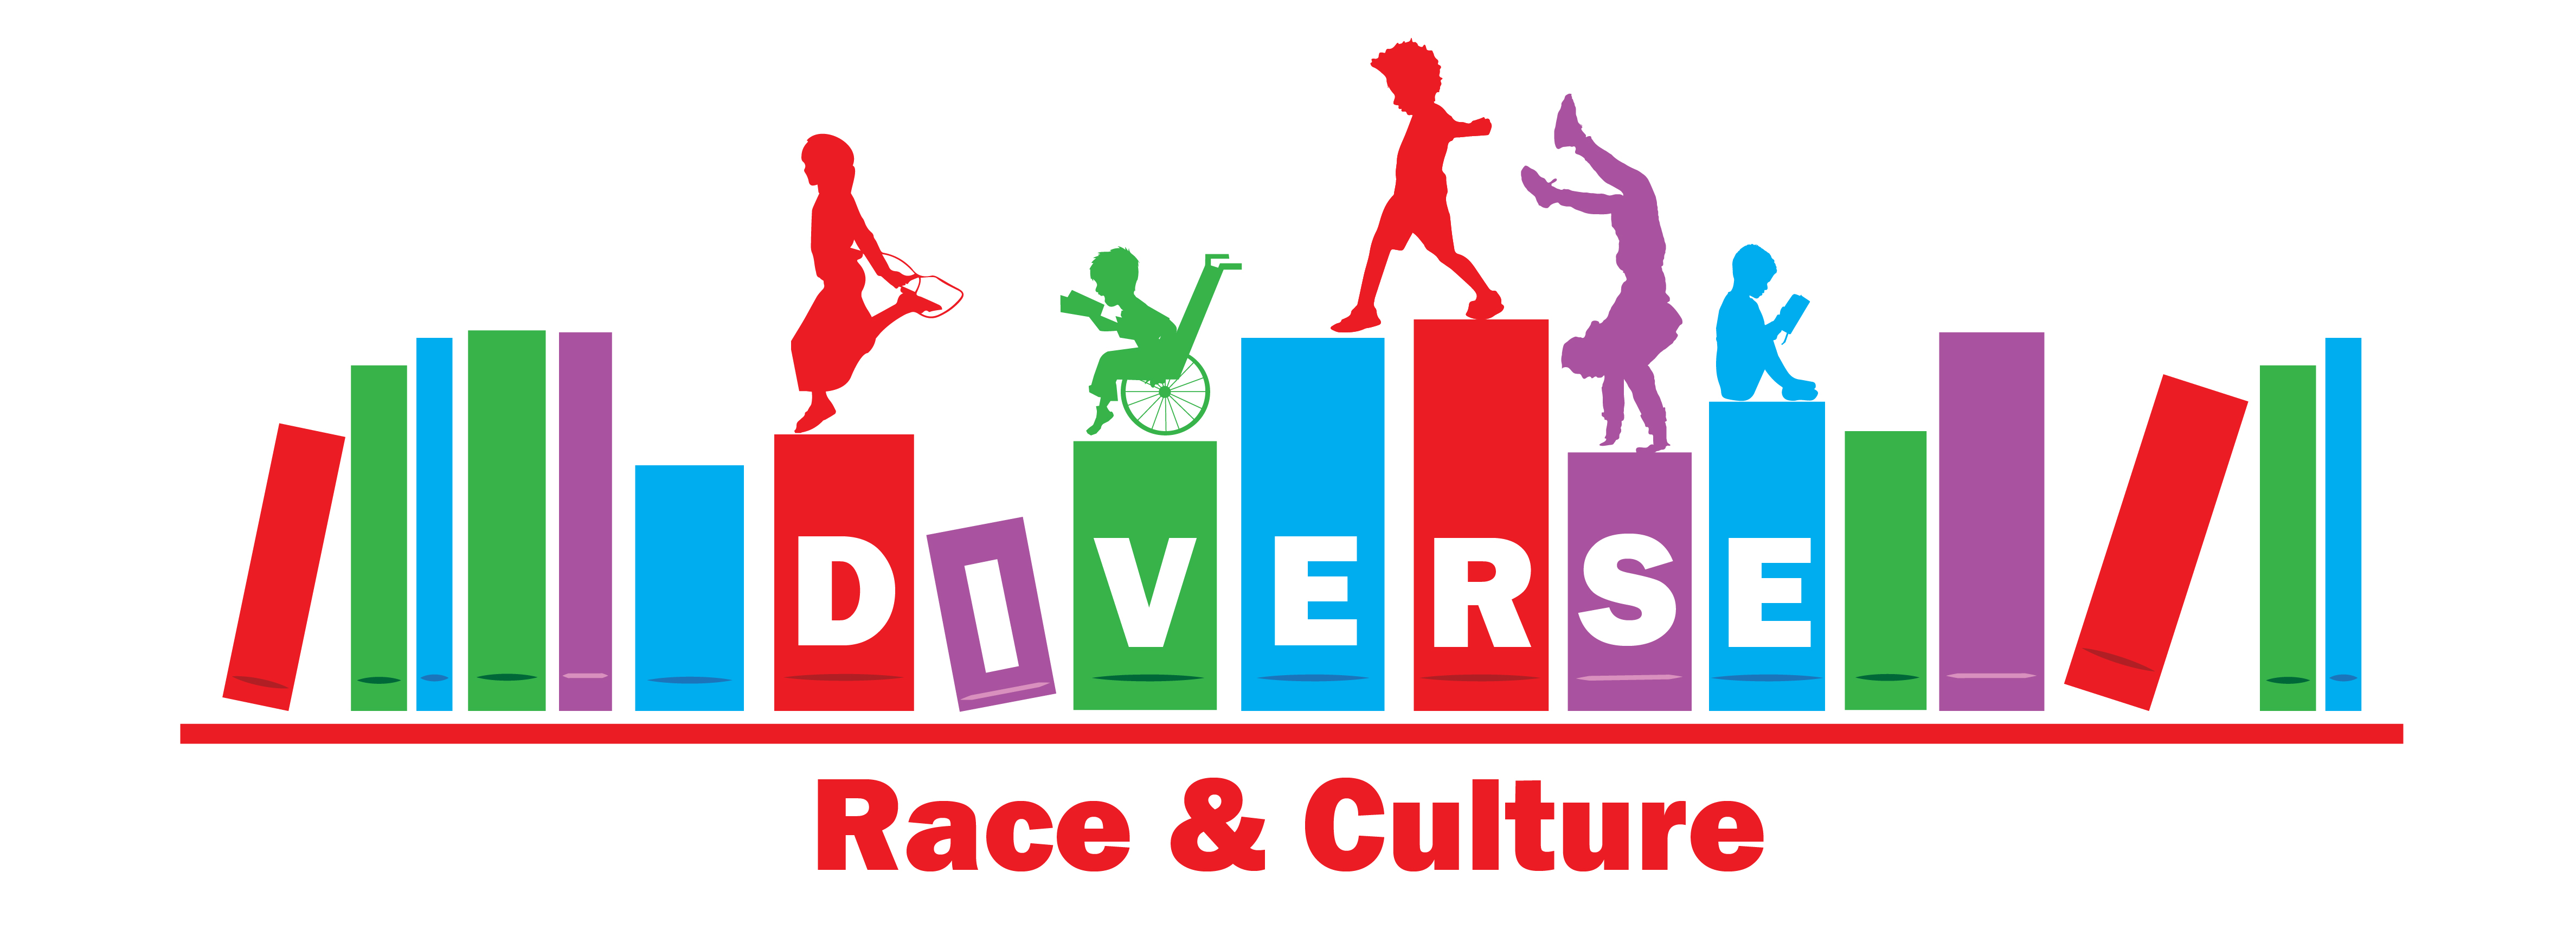 Race & Culture